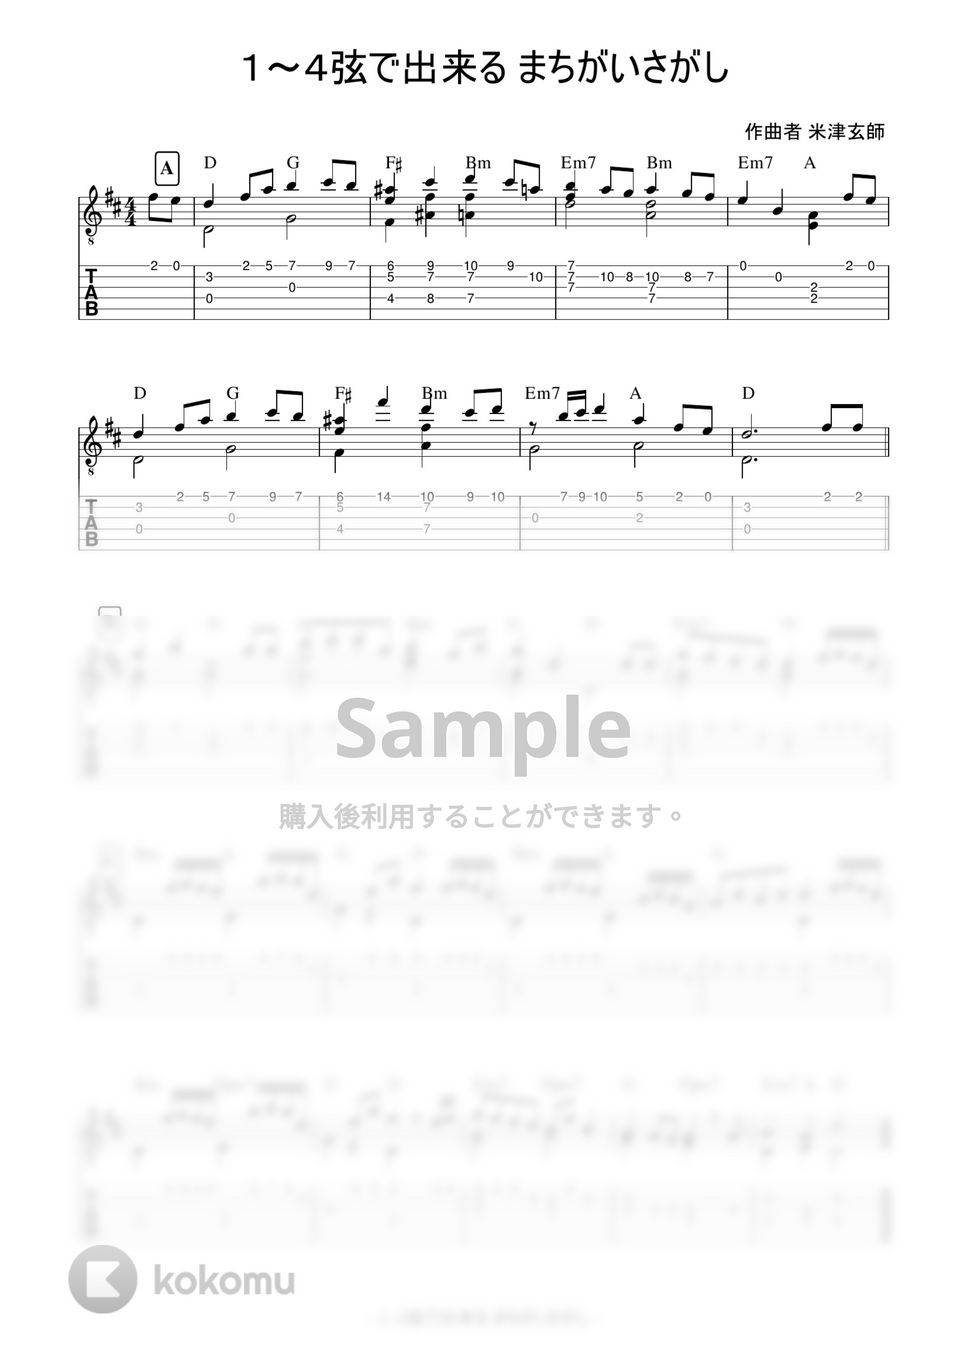 菅田将暉 - まちがいさがし (4本弦で弾ける簡単ソロギター) by 早乙女浩司